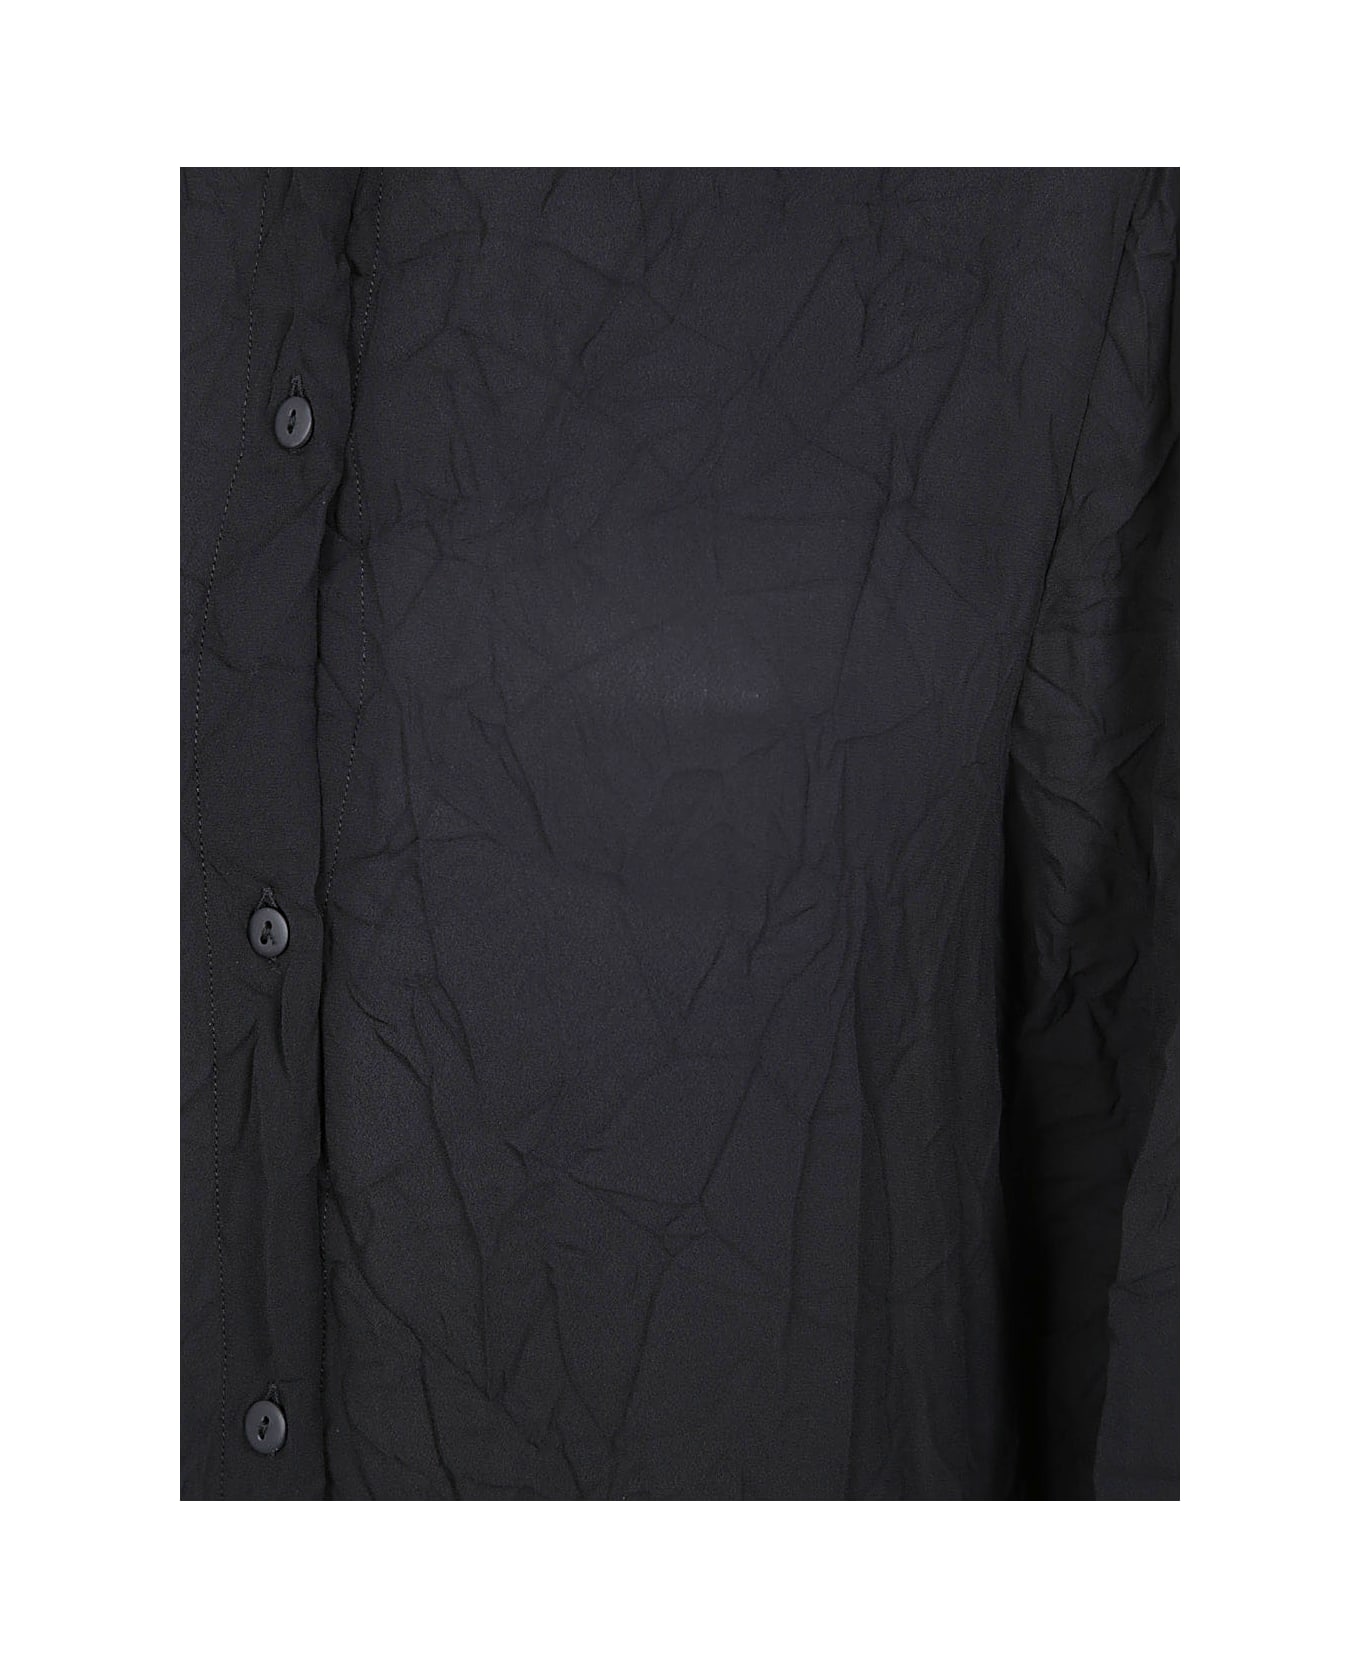 Maria Calderara New Roomy Fit Parachute Long Shirt - Black